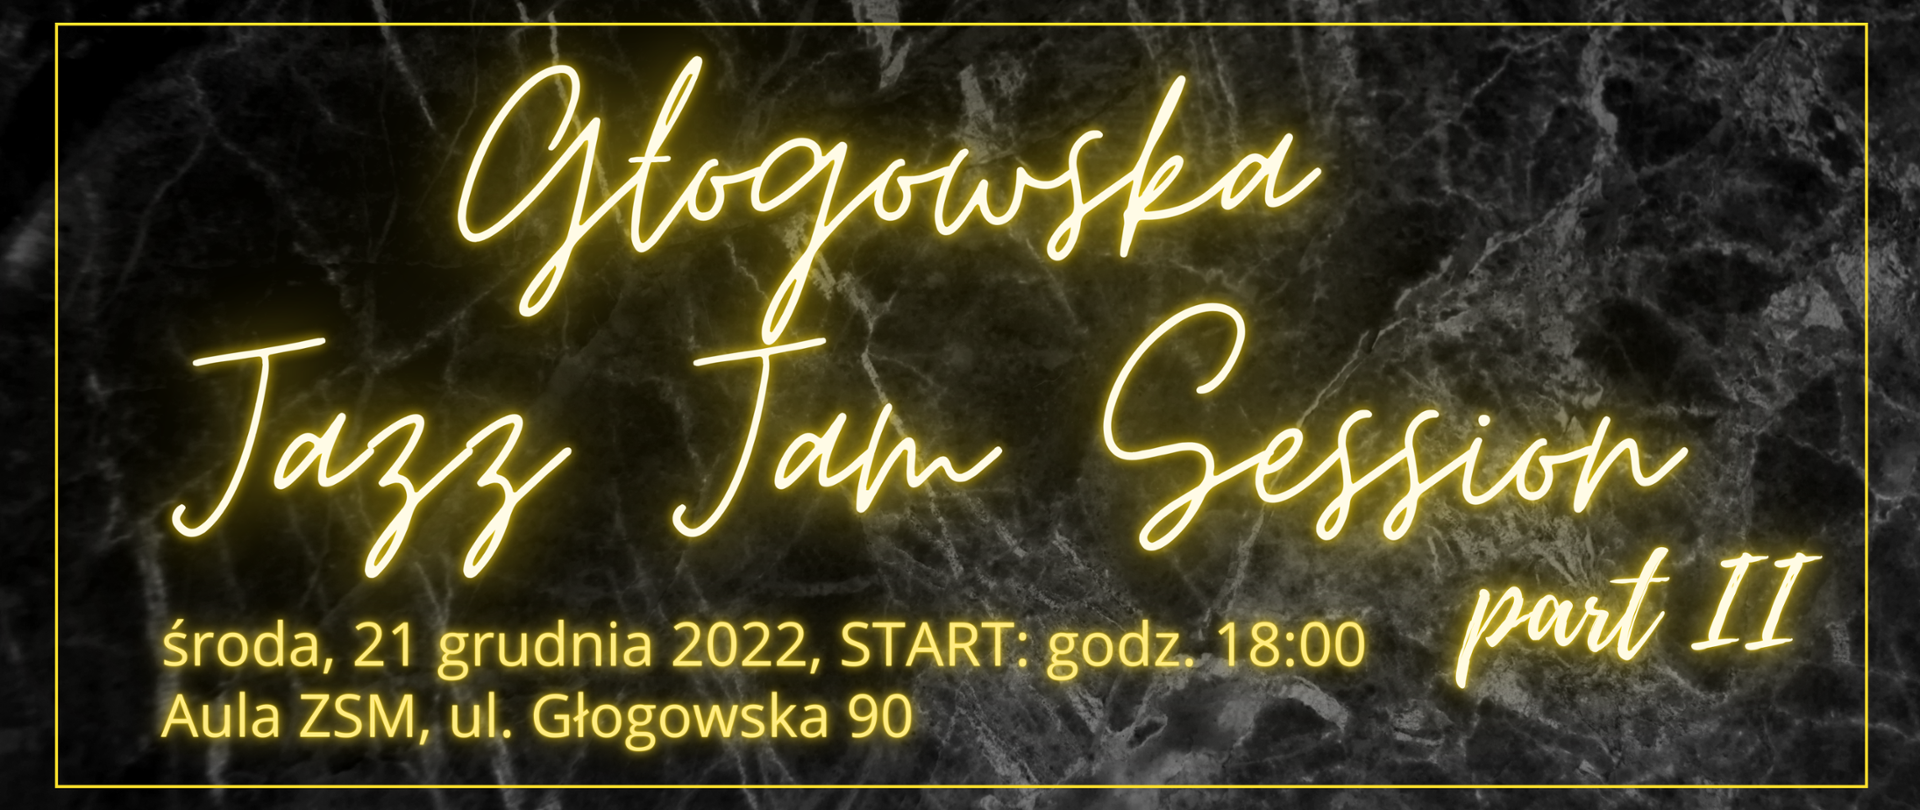 Grafika na ciemnym, marmurkowym tle z neonowym, żółtym tekstem: "Głogowska Jazz Jam Session, part II, środa, 21 grudnia 2022, godz. 18:00, Aula ZSM, ul. Głogowska 90